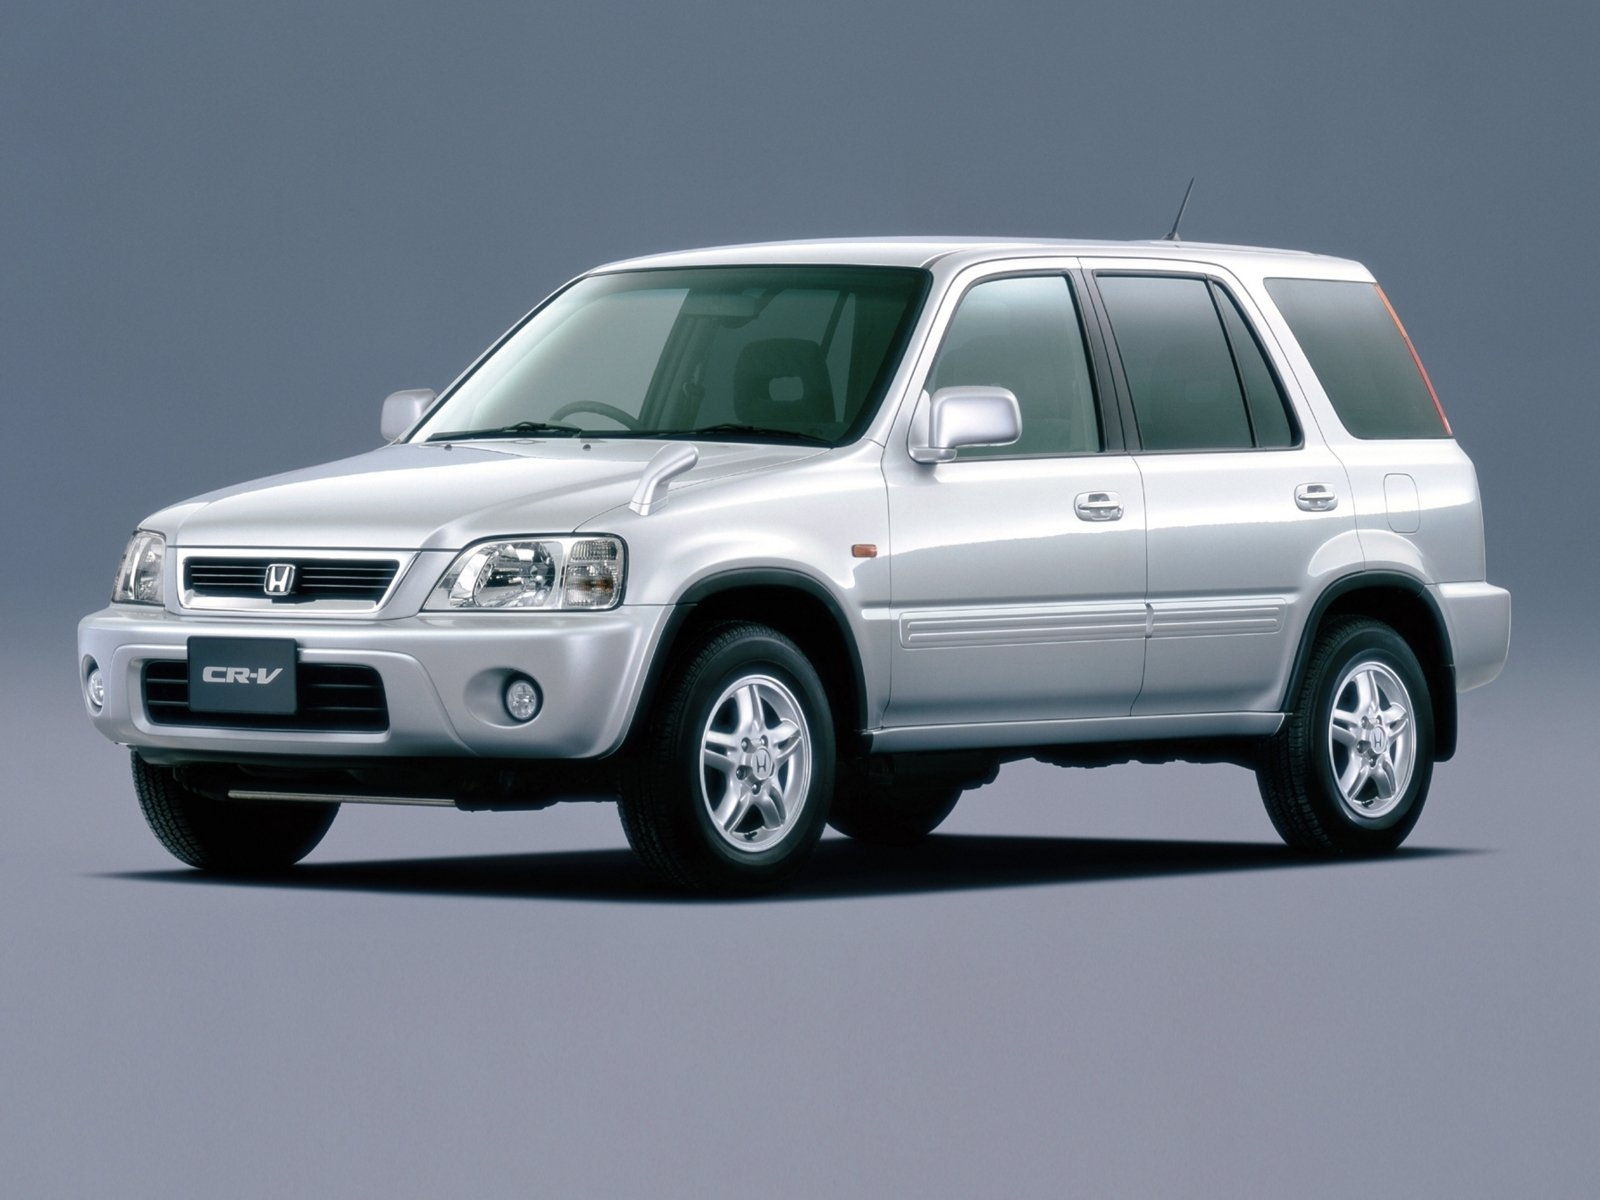 Хонда срв рд1 купить в новосибирске. Honda CRV 1 Rd 1. Honda CR-V rd1 1997. Honda CRV rd1. Honda CRV rd1 1999.